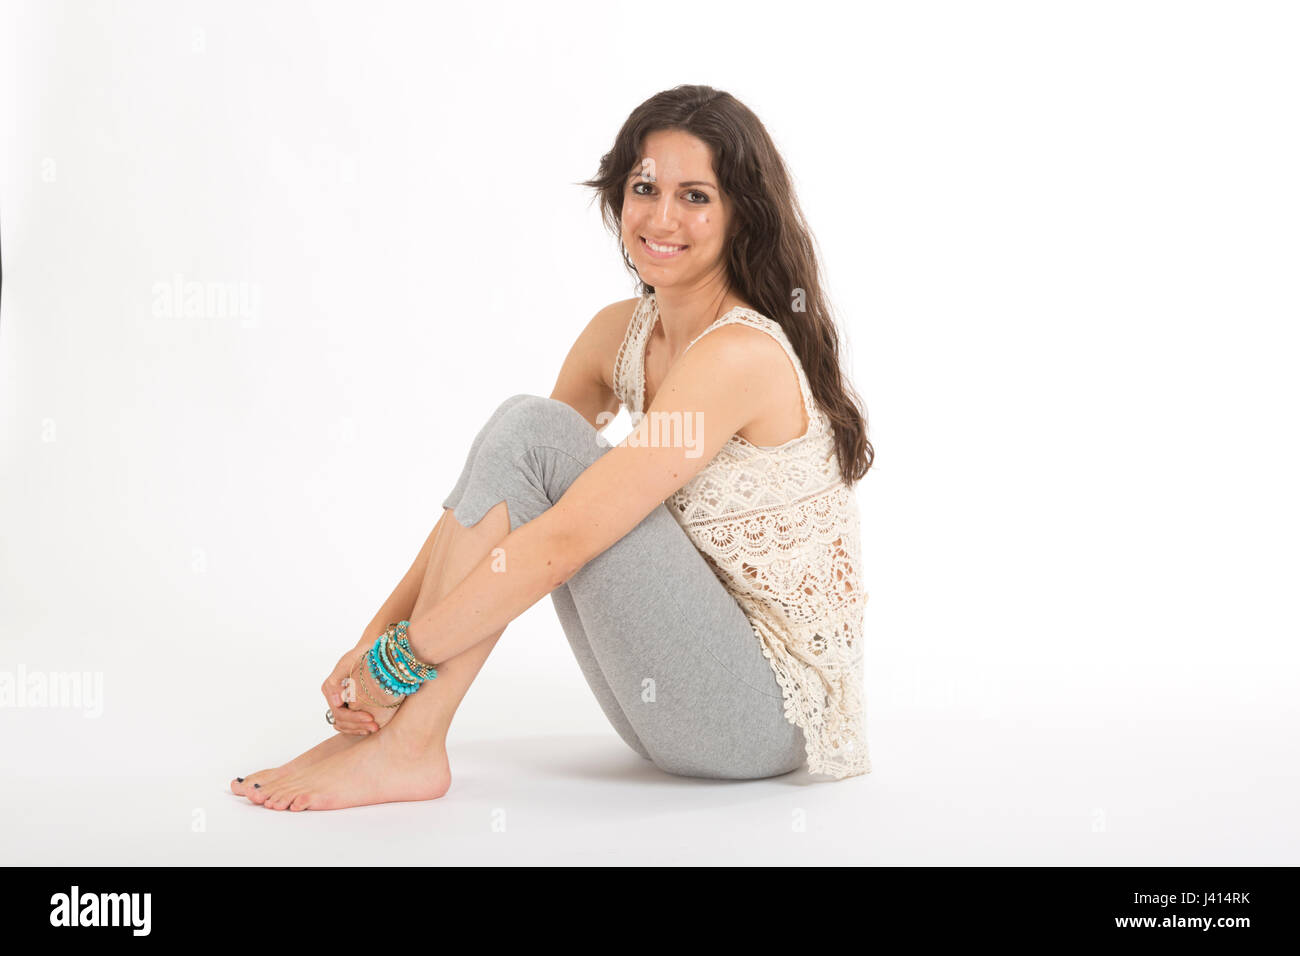 En bonne santé, young woman practicing yoga. Banque D'Images